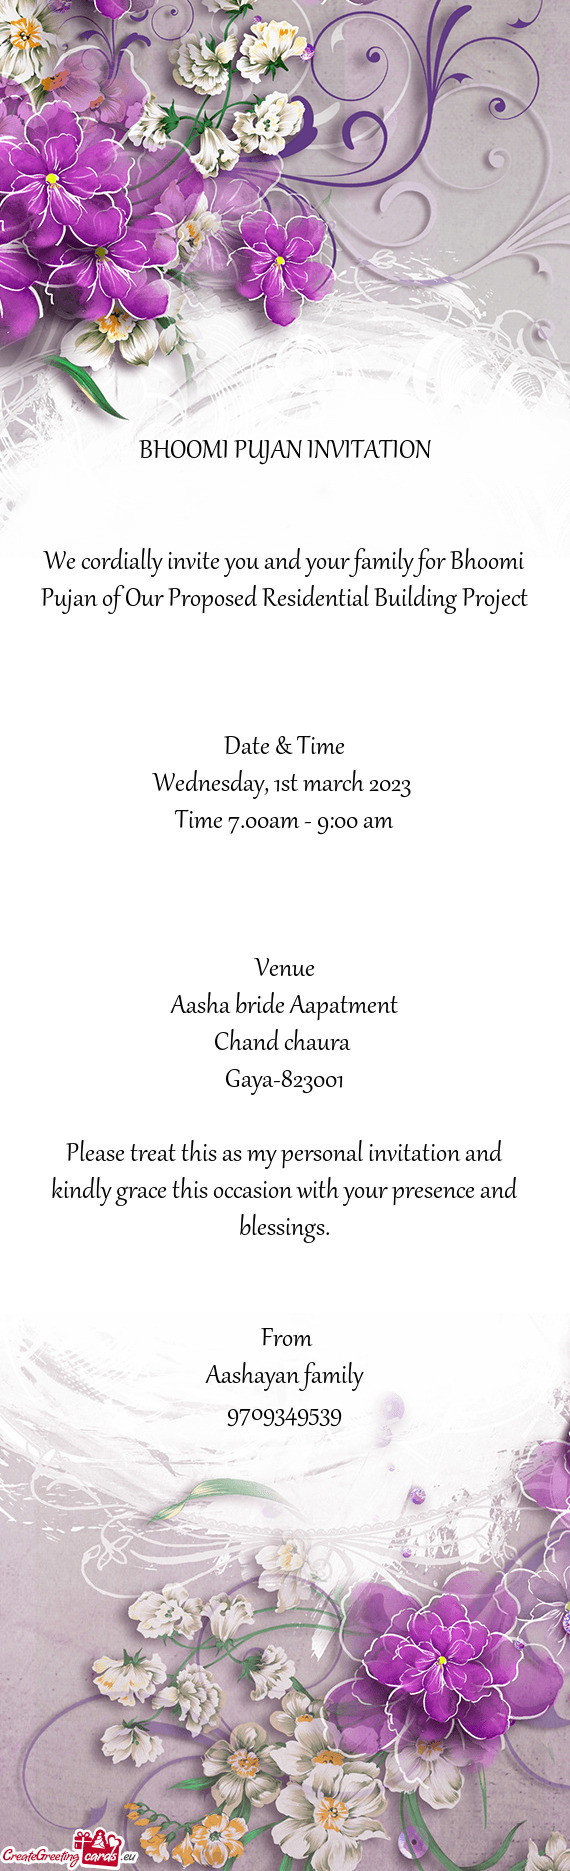 Aasha bride Aapatment